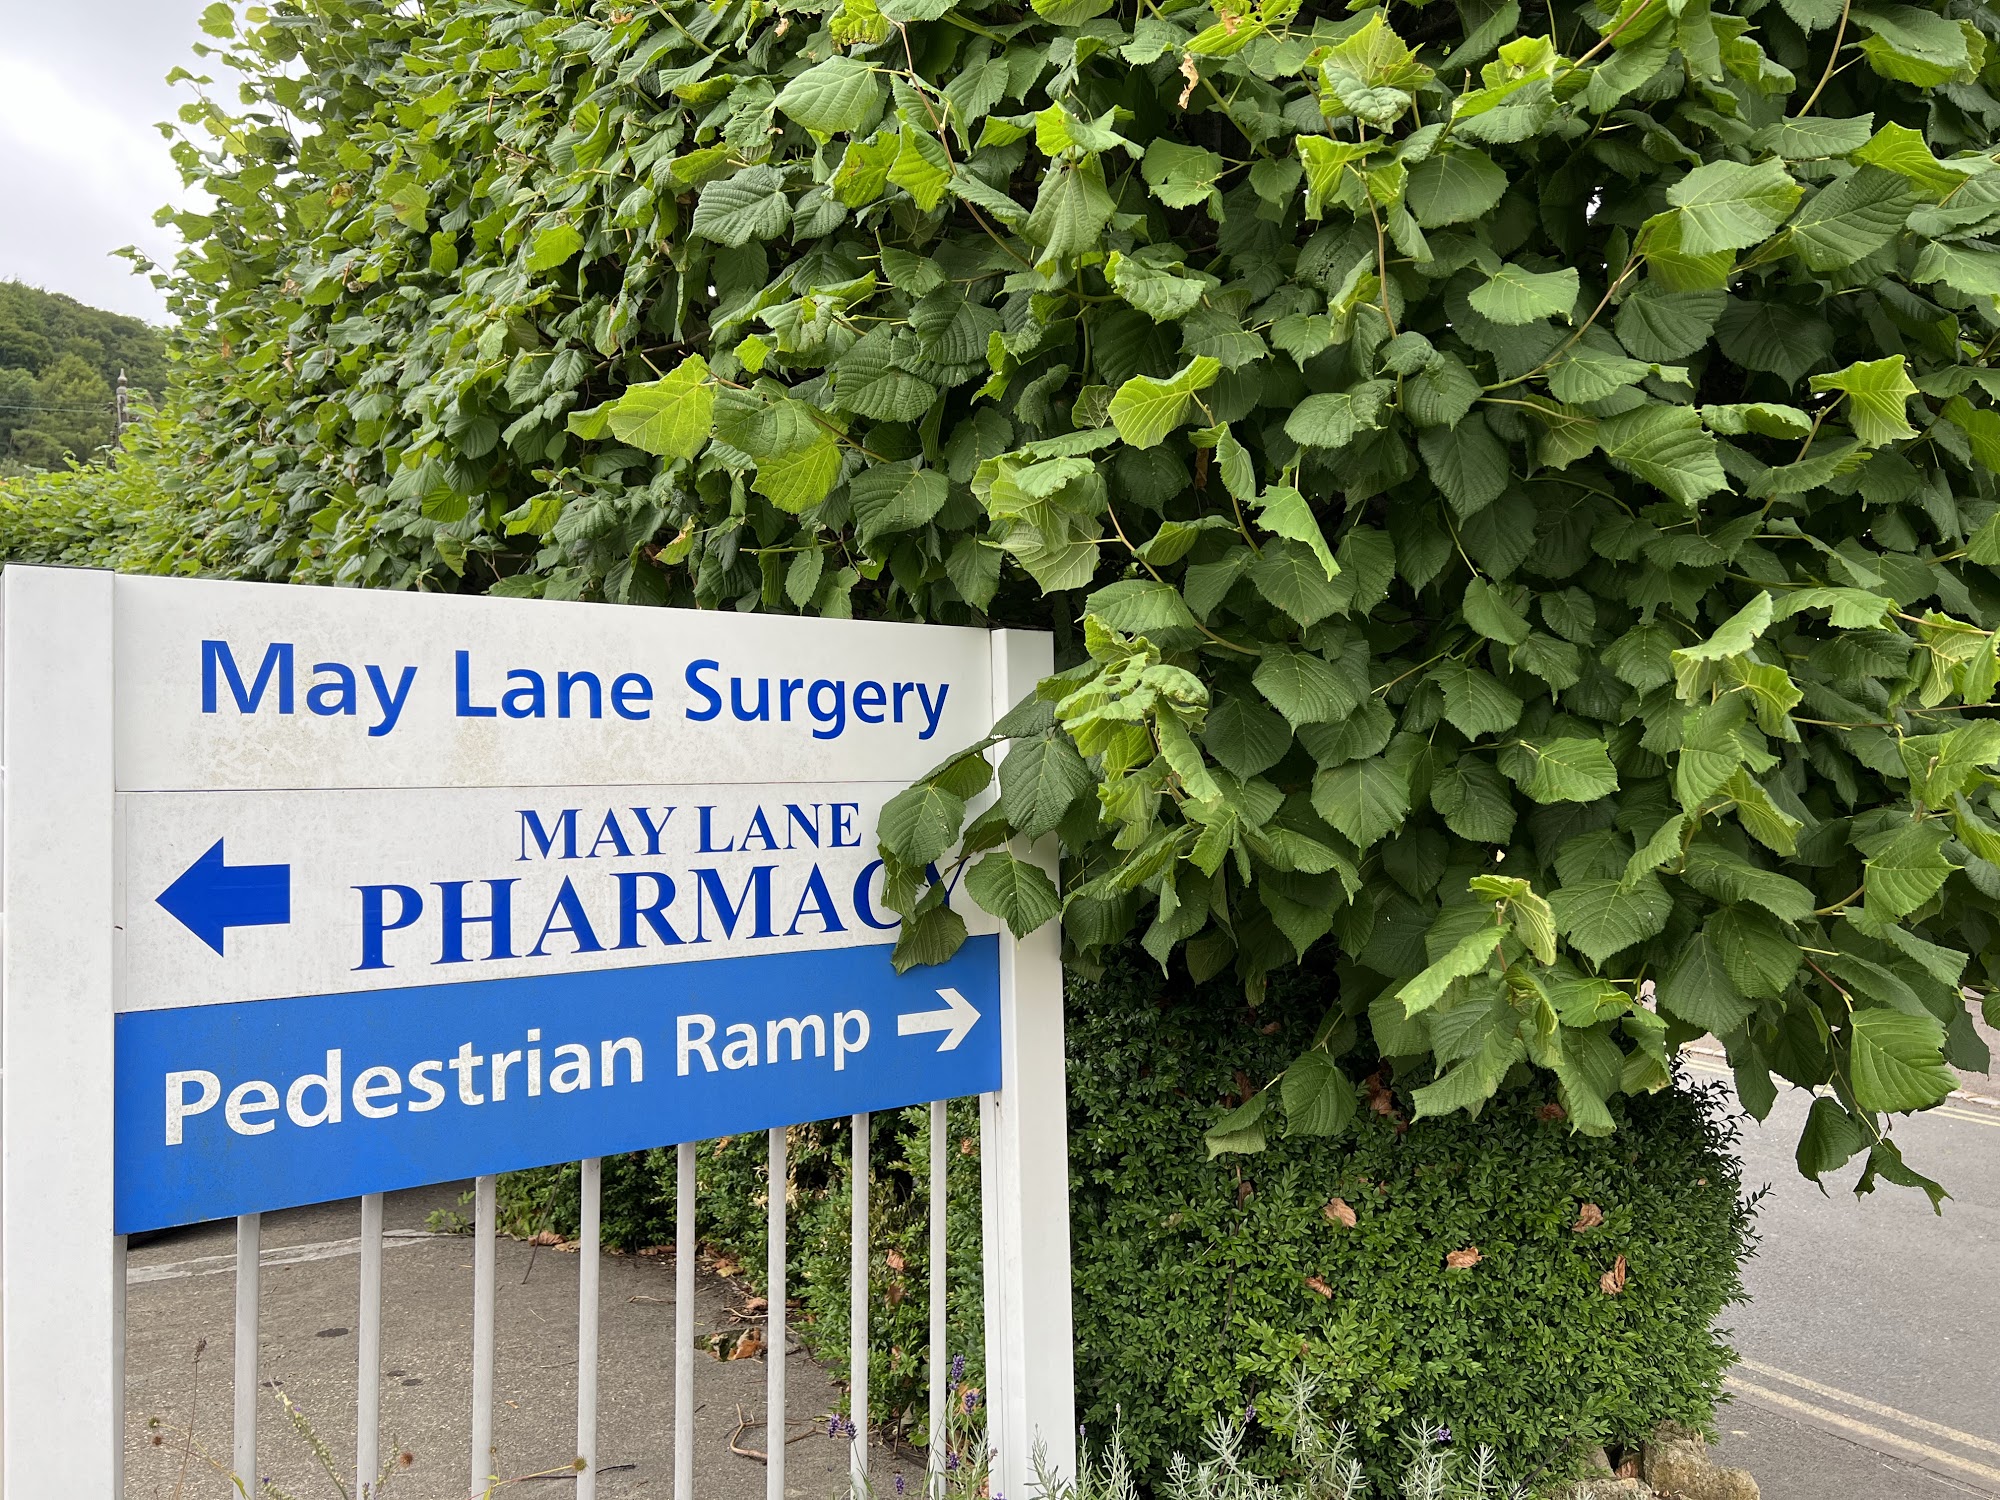 May Lane Pharmacy